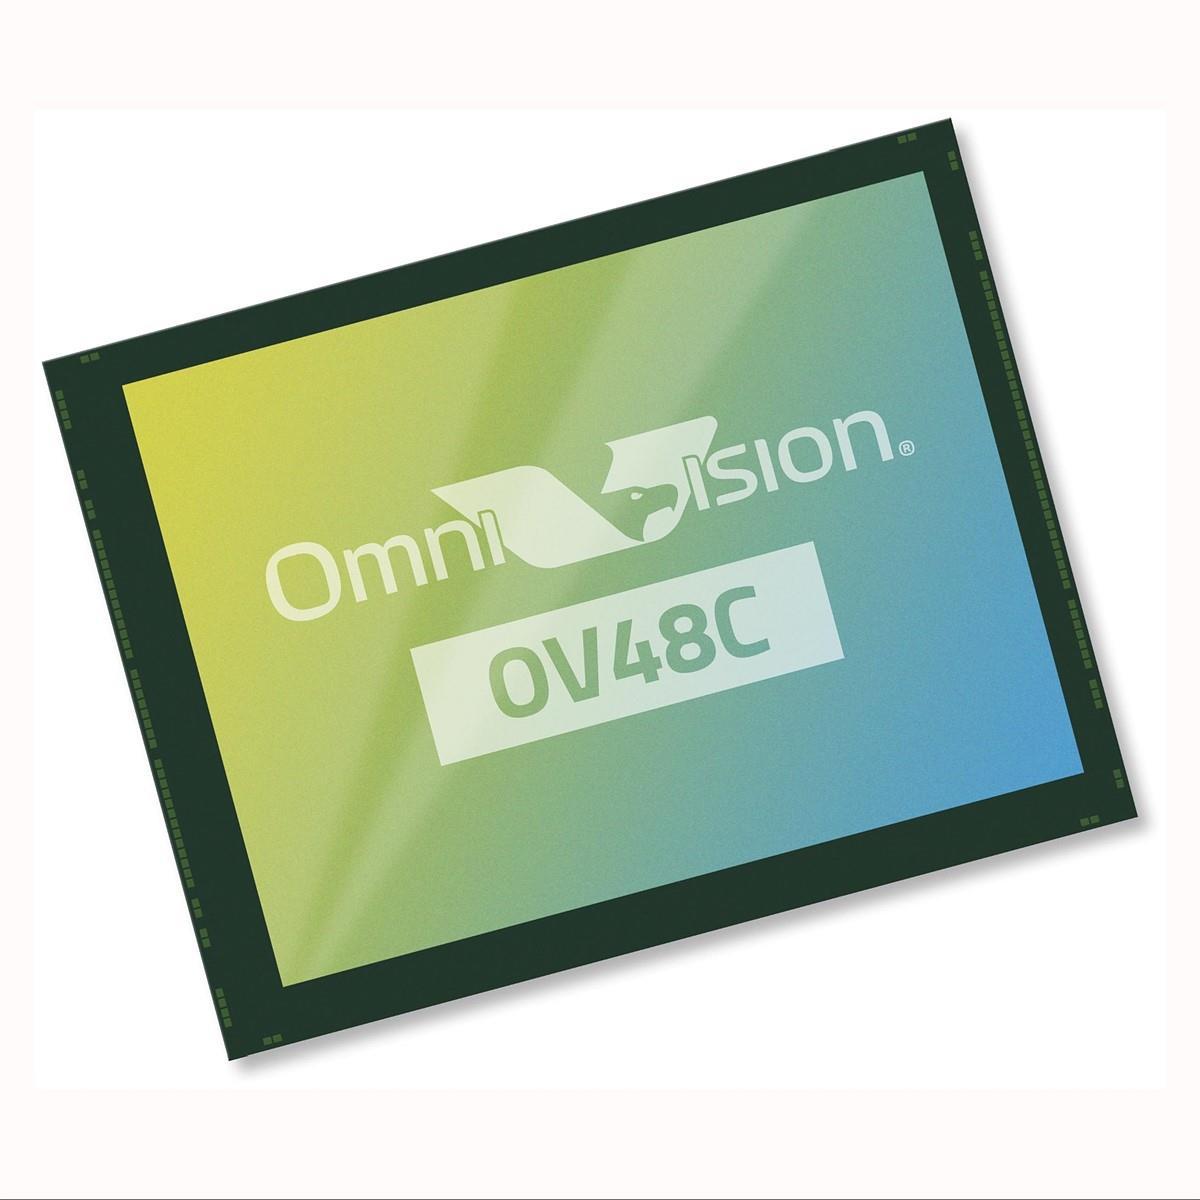 OmniVision yeni 48MP çözünürlüğünde sensörünü duyurdu